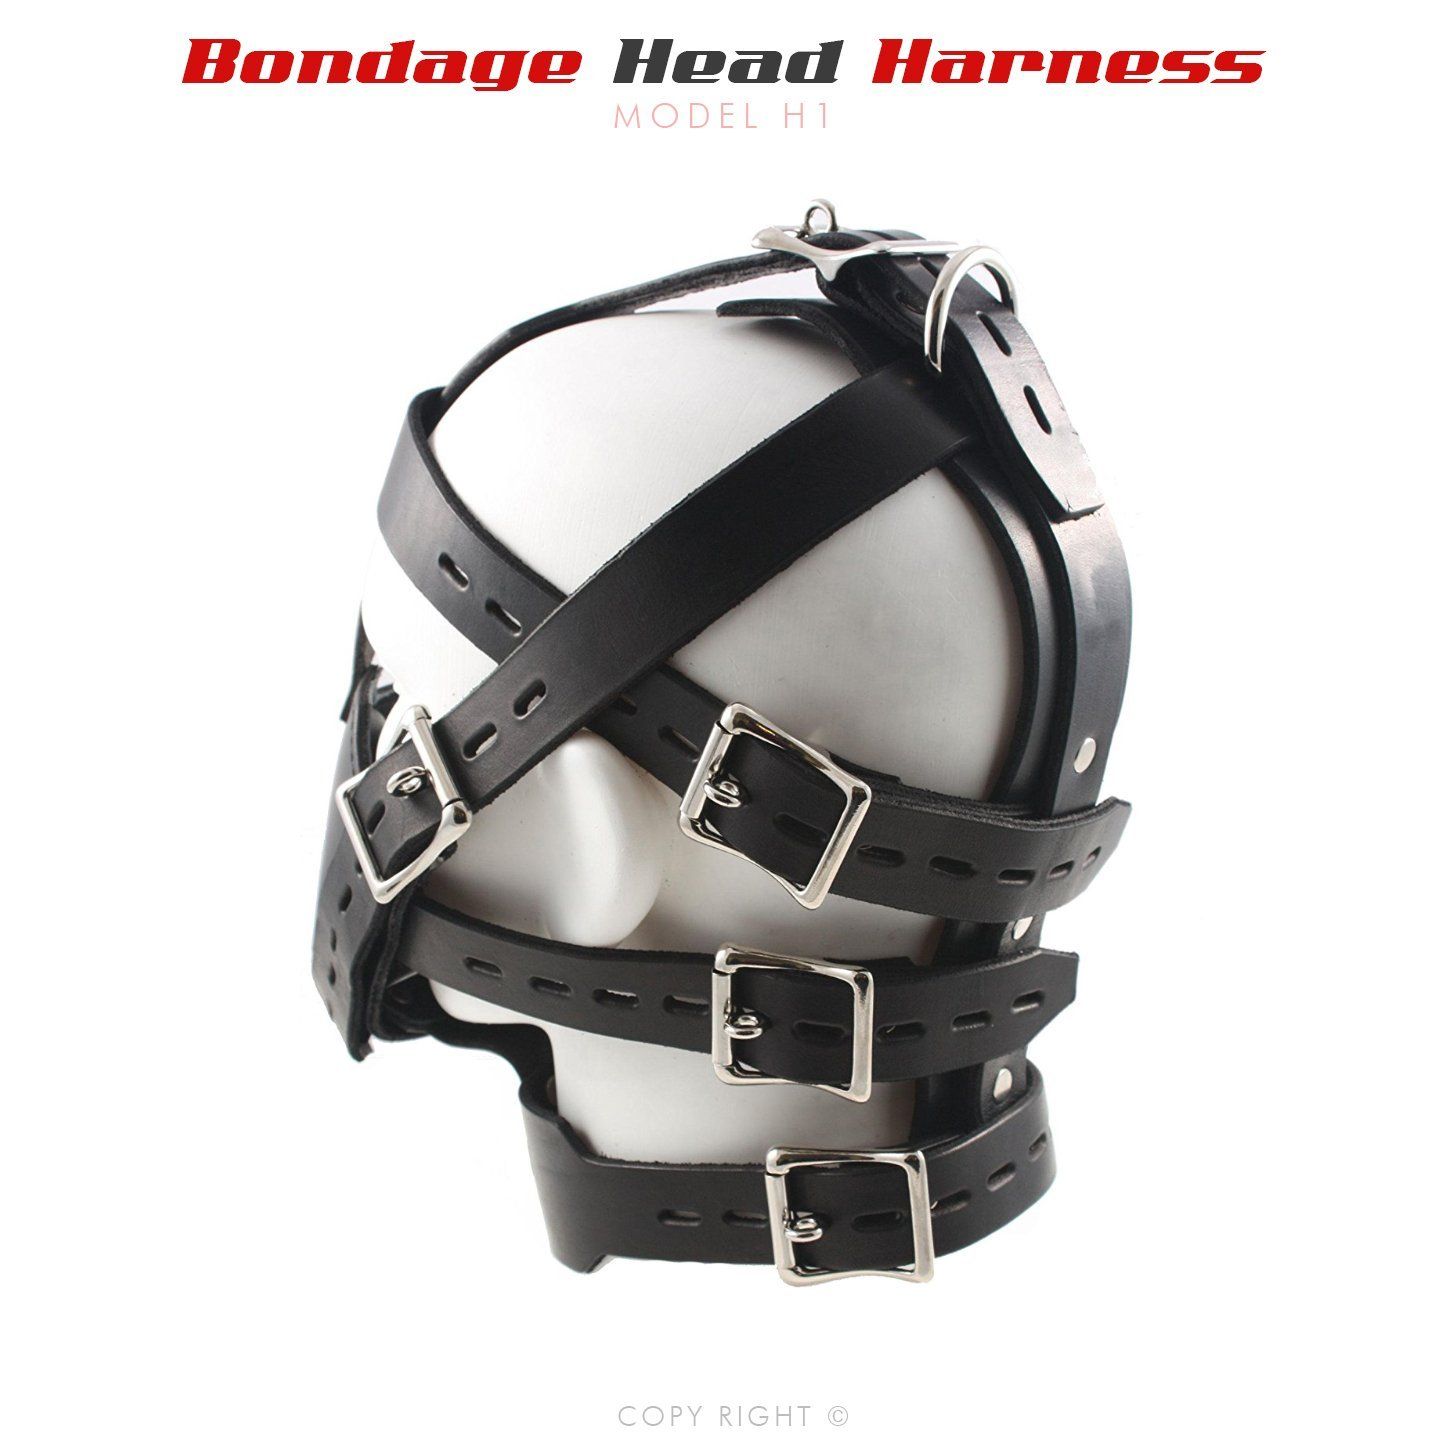 Leather bondage helmet